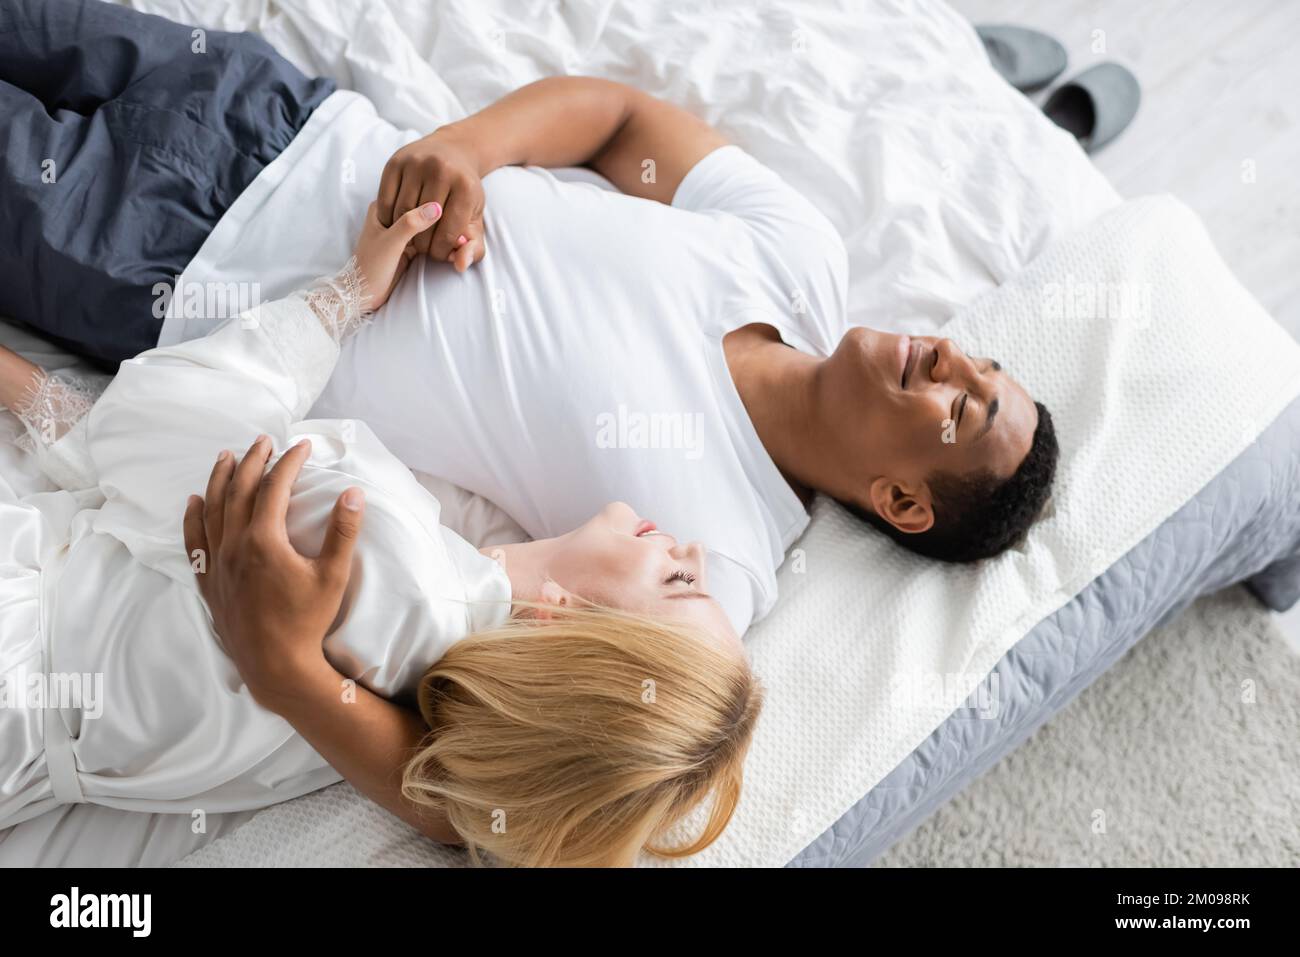 Ein afroamerikanischer Mann mit geschlossenen Augen, der eine blonde Frau umarmt und ihre Hand am Bett hält Stockfoto